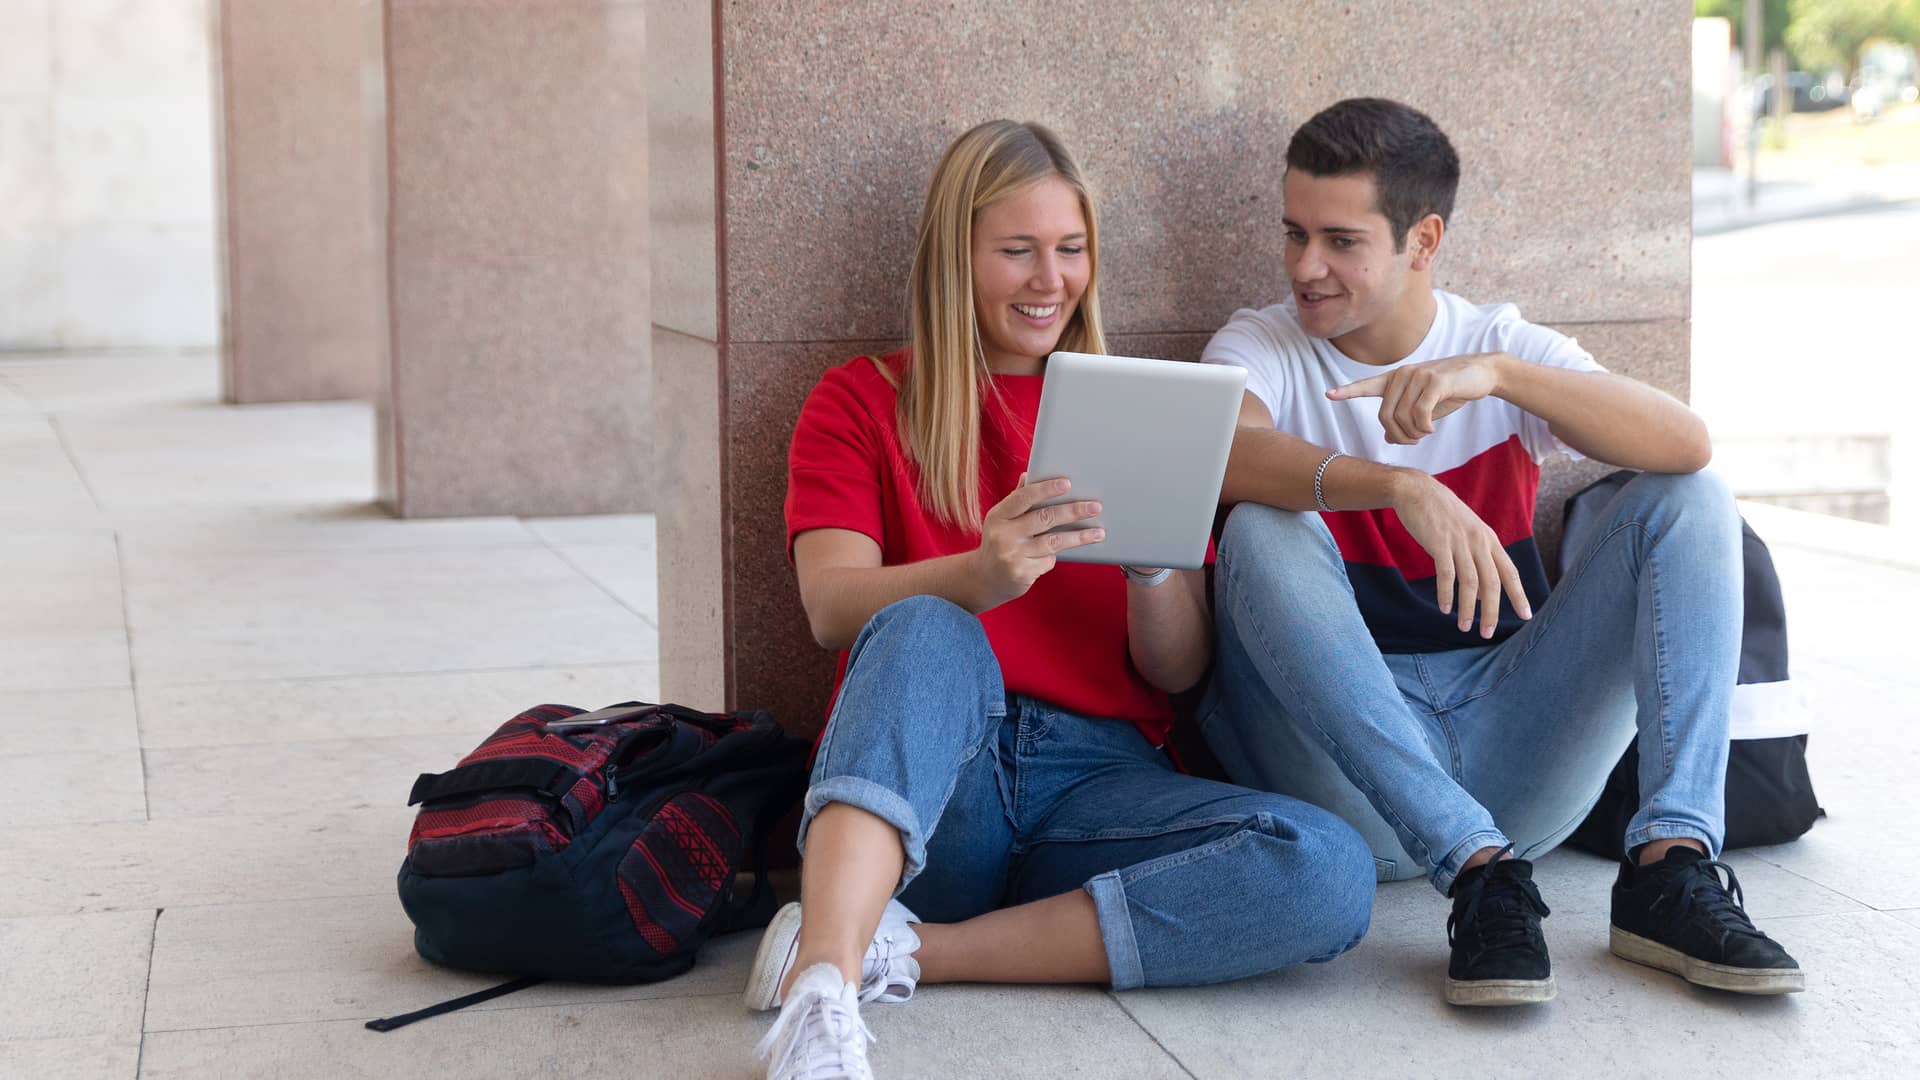 Jovenes usando tablet conectada al internet de su smartphone con el tethering de pepephone